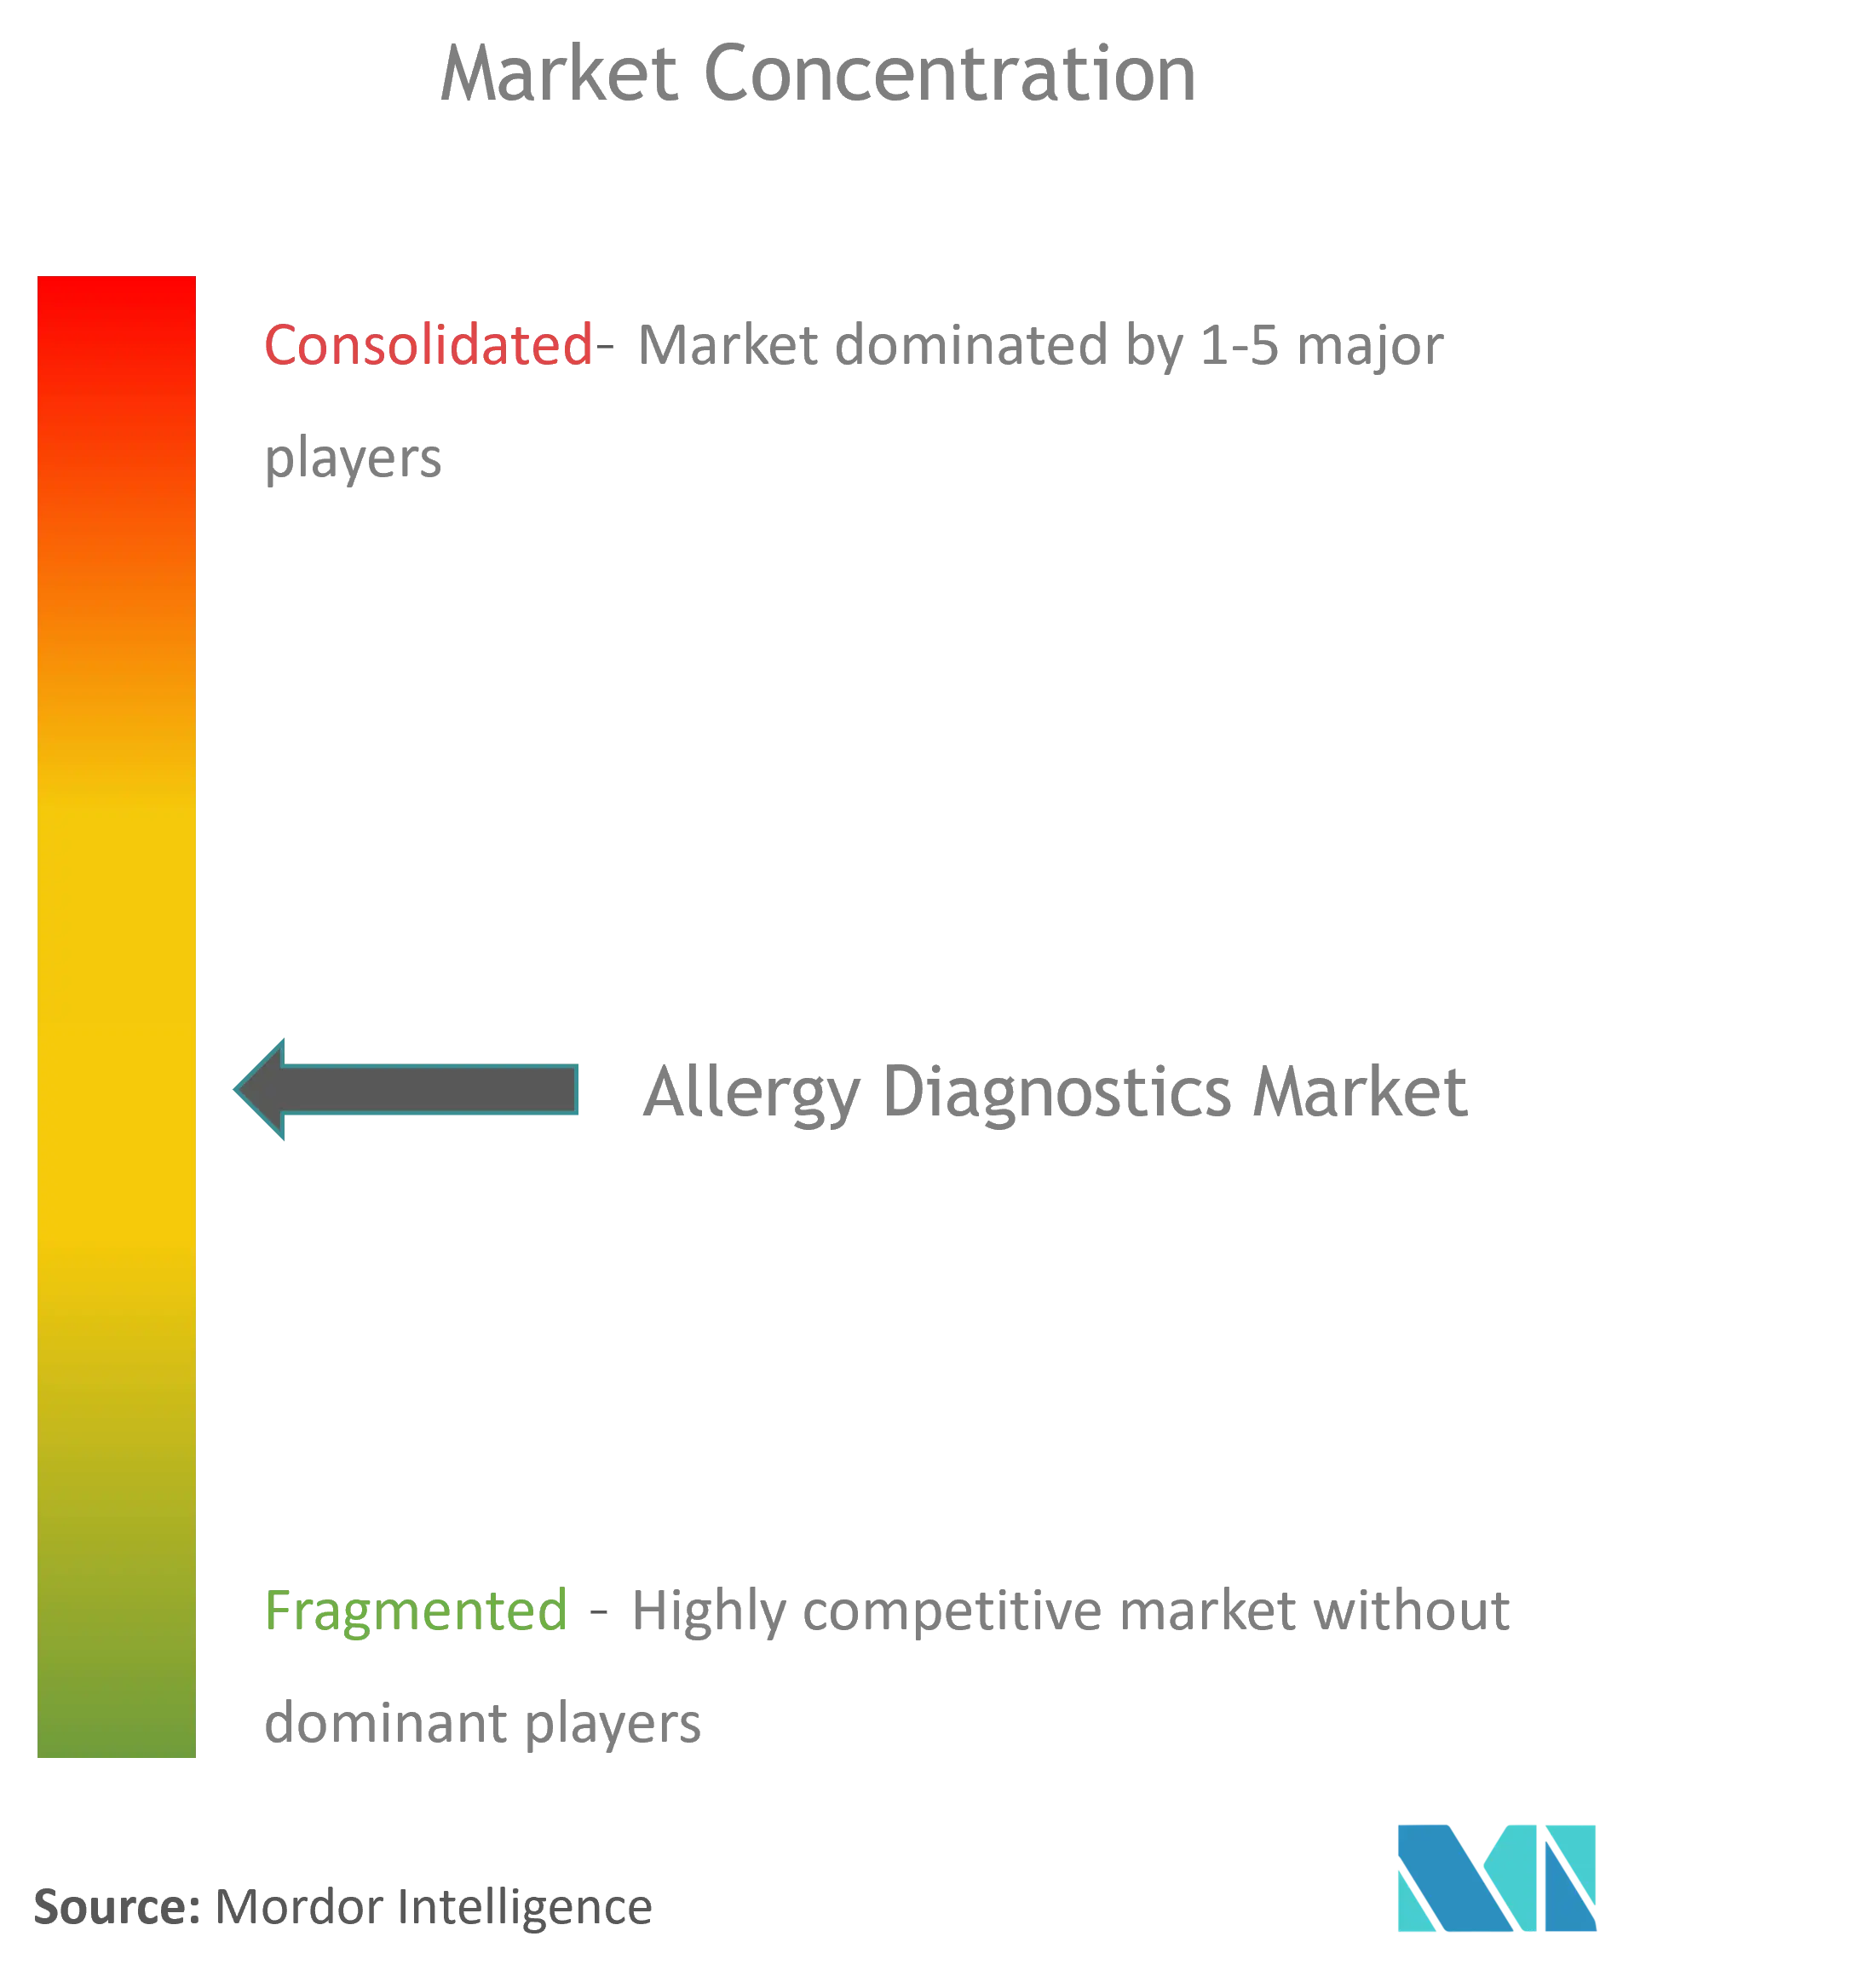 Allergy Diagnostics Market Concentration